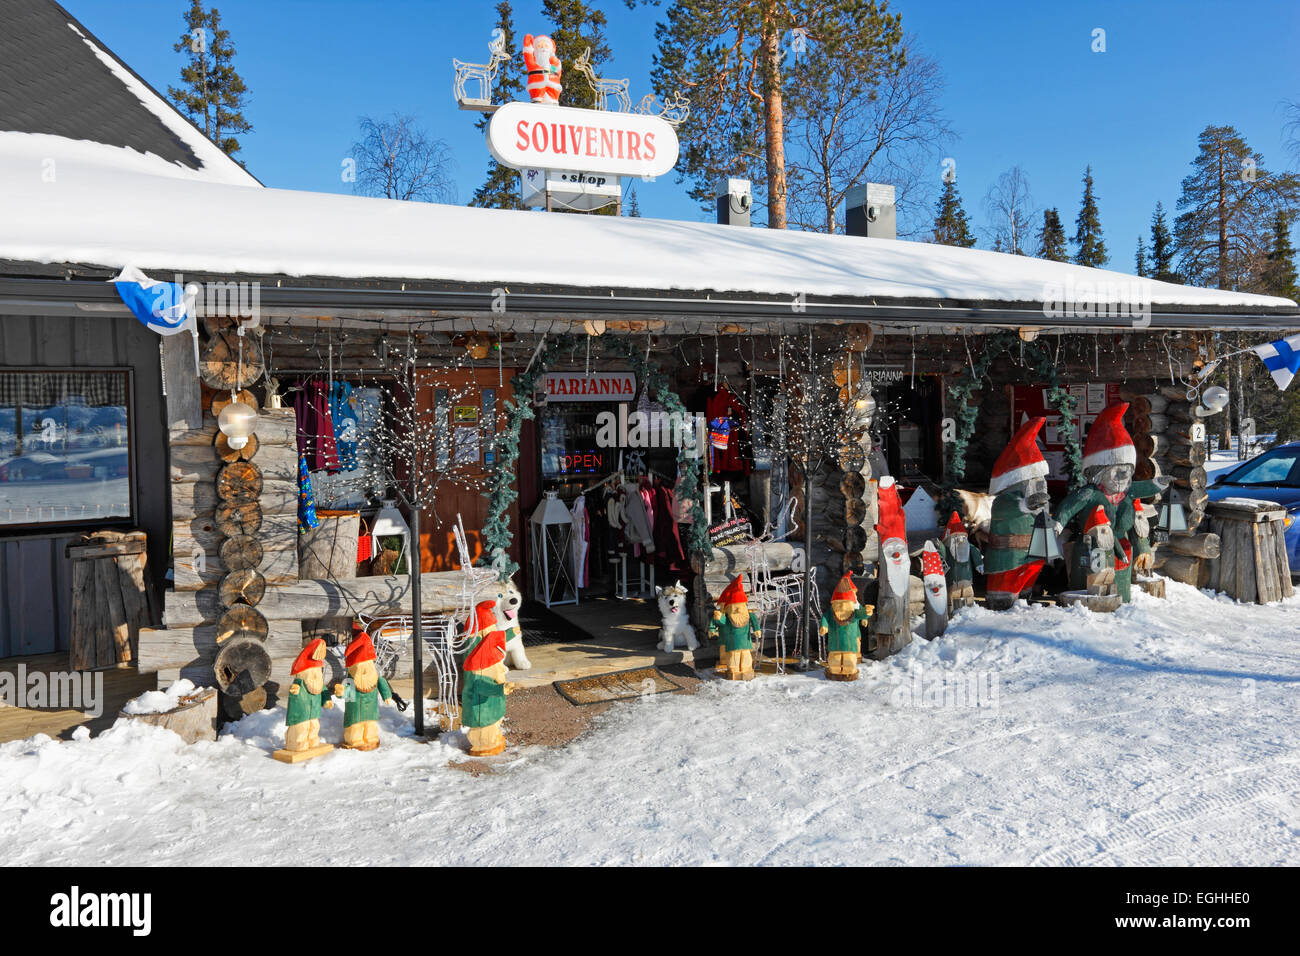 Finlandia, región de Luosto tienda de souvenirs. Foto de stock